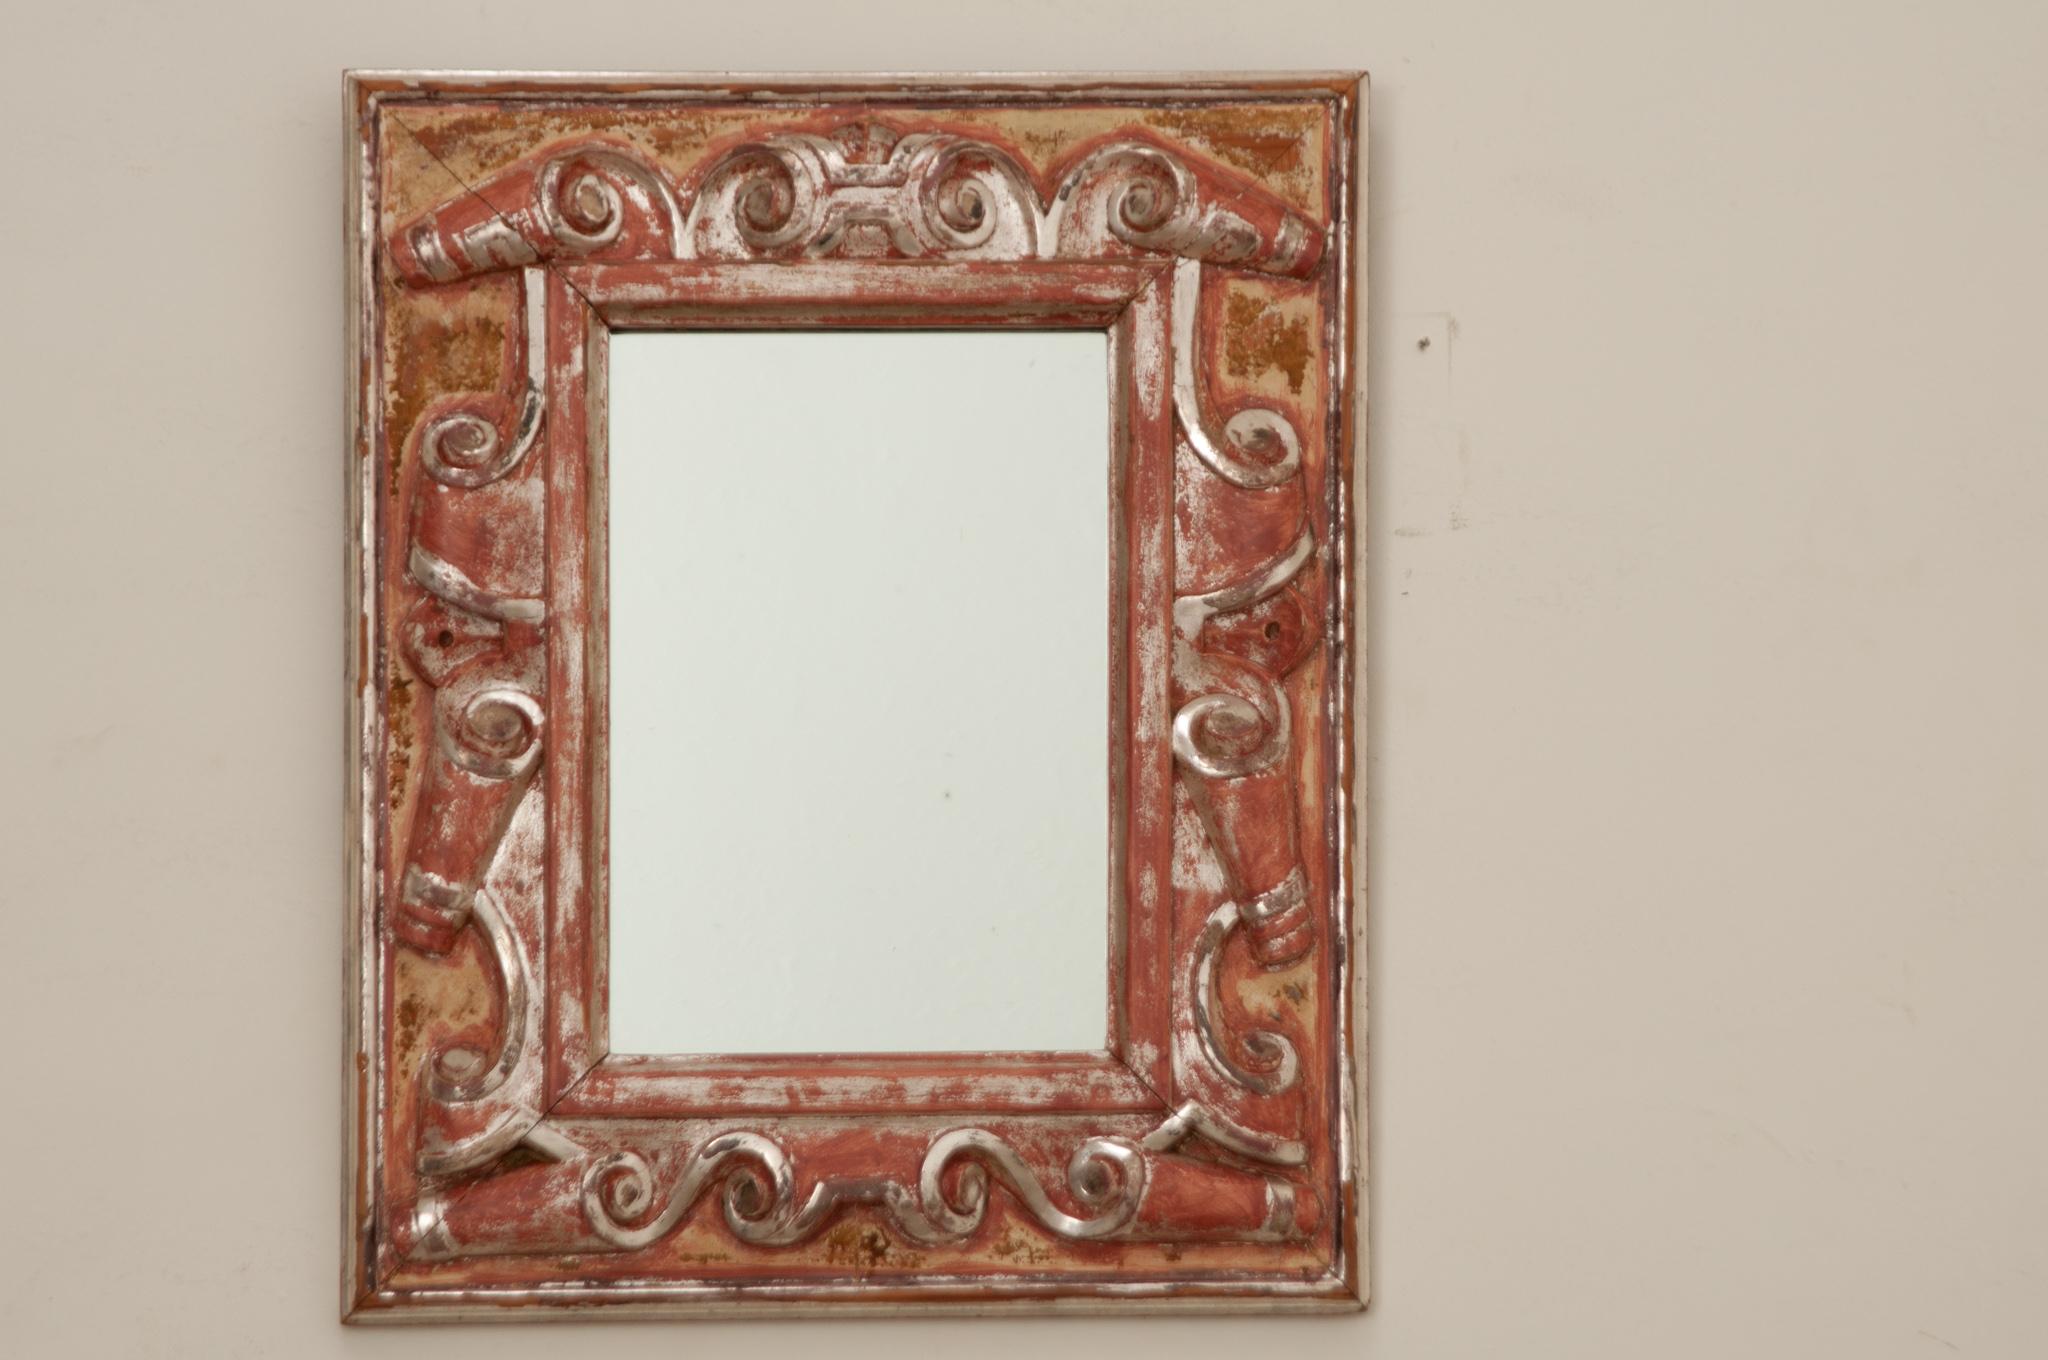 Ein schöner und einzigartiger geschnitzter Spiegel aus italienischem Goldholz aus dem 19. Jahrhundert. Dieser silberne, vergoldete, rechteckige Spiegel ist ein echter Blickfang mit reich geschnitzten Schnörkeln, die den Rahmen zieren. Die Einfassung